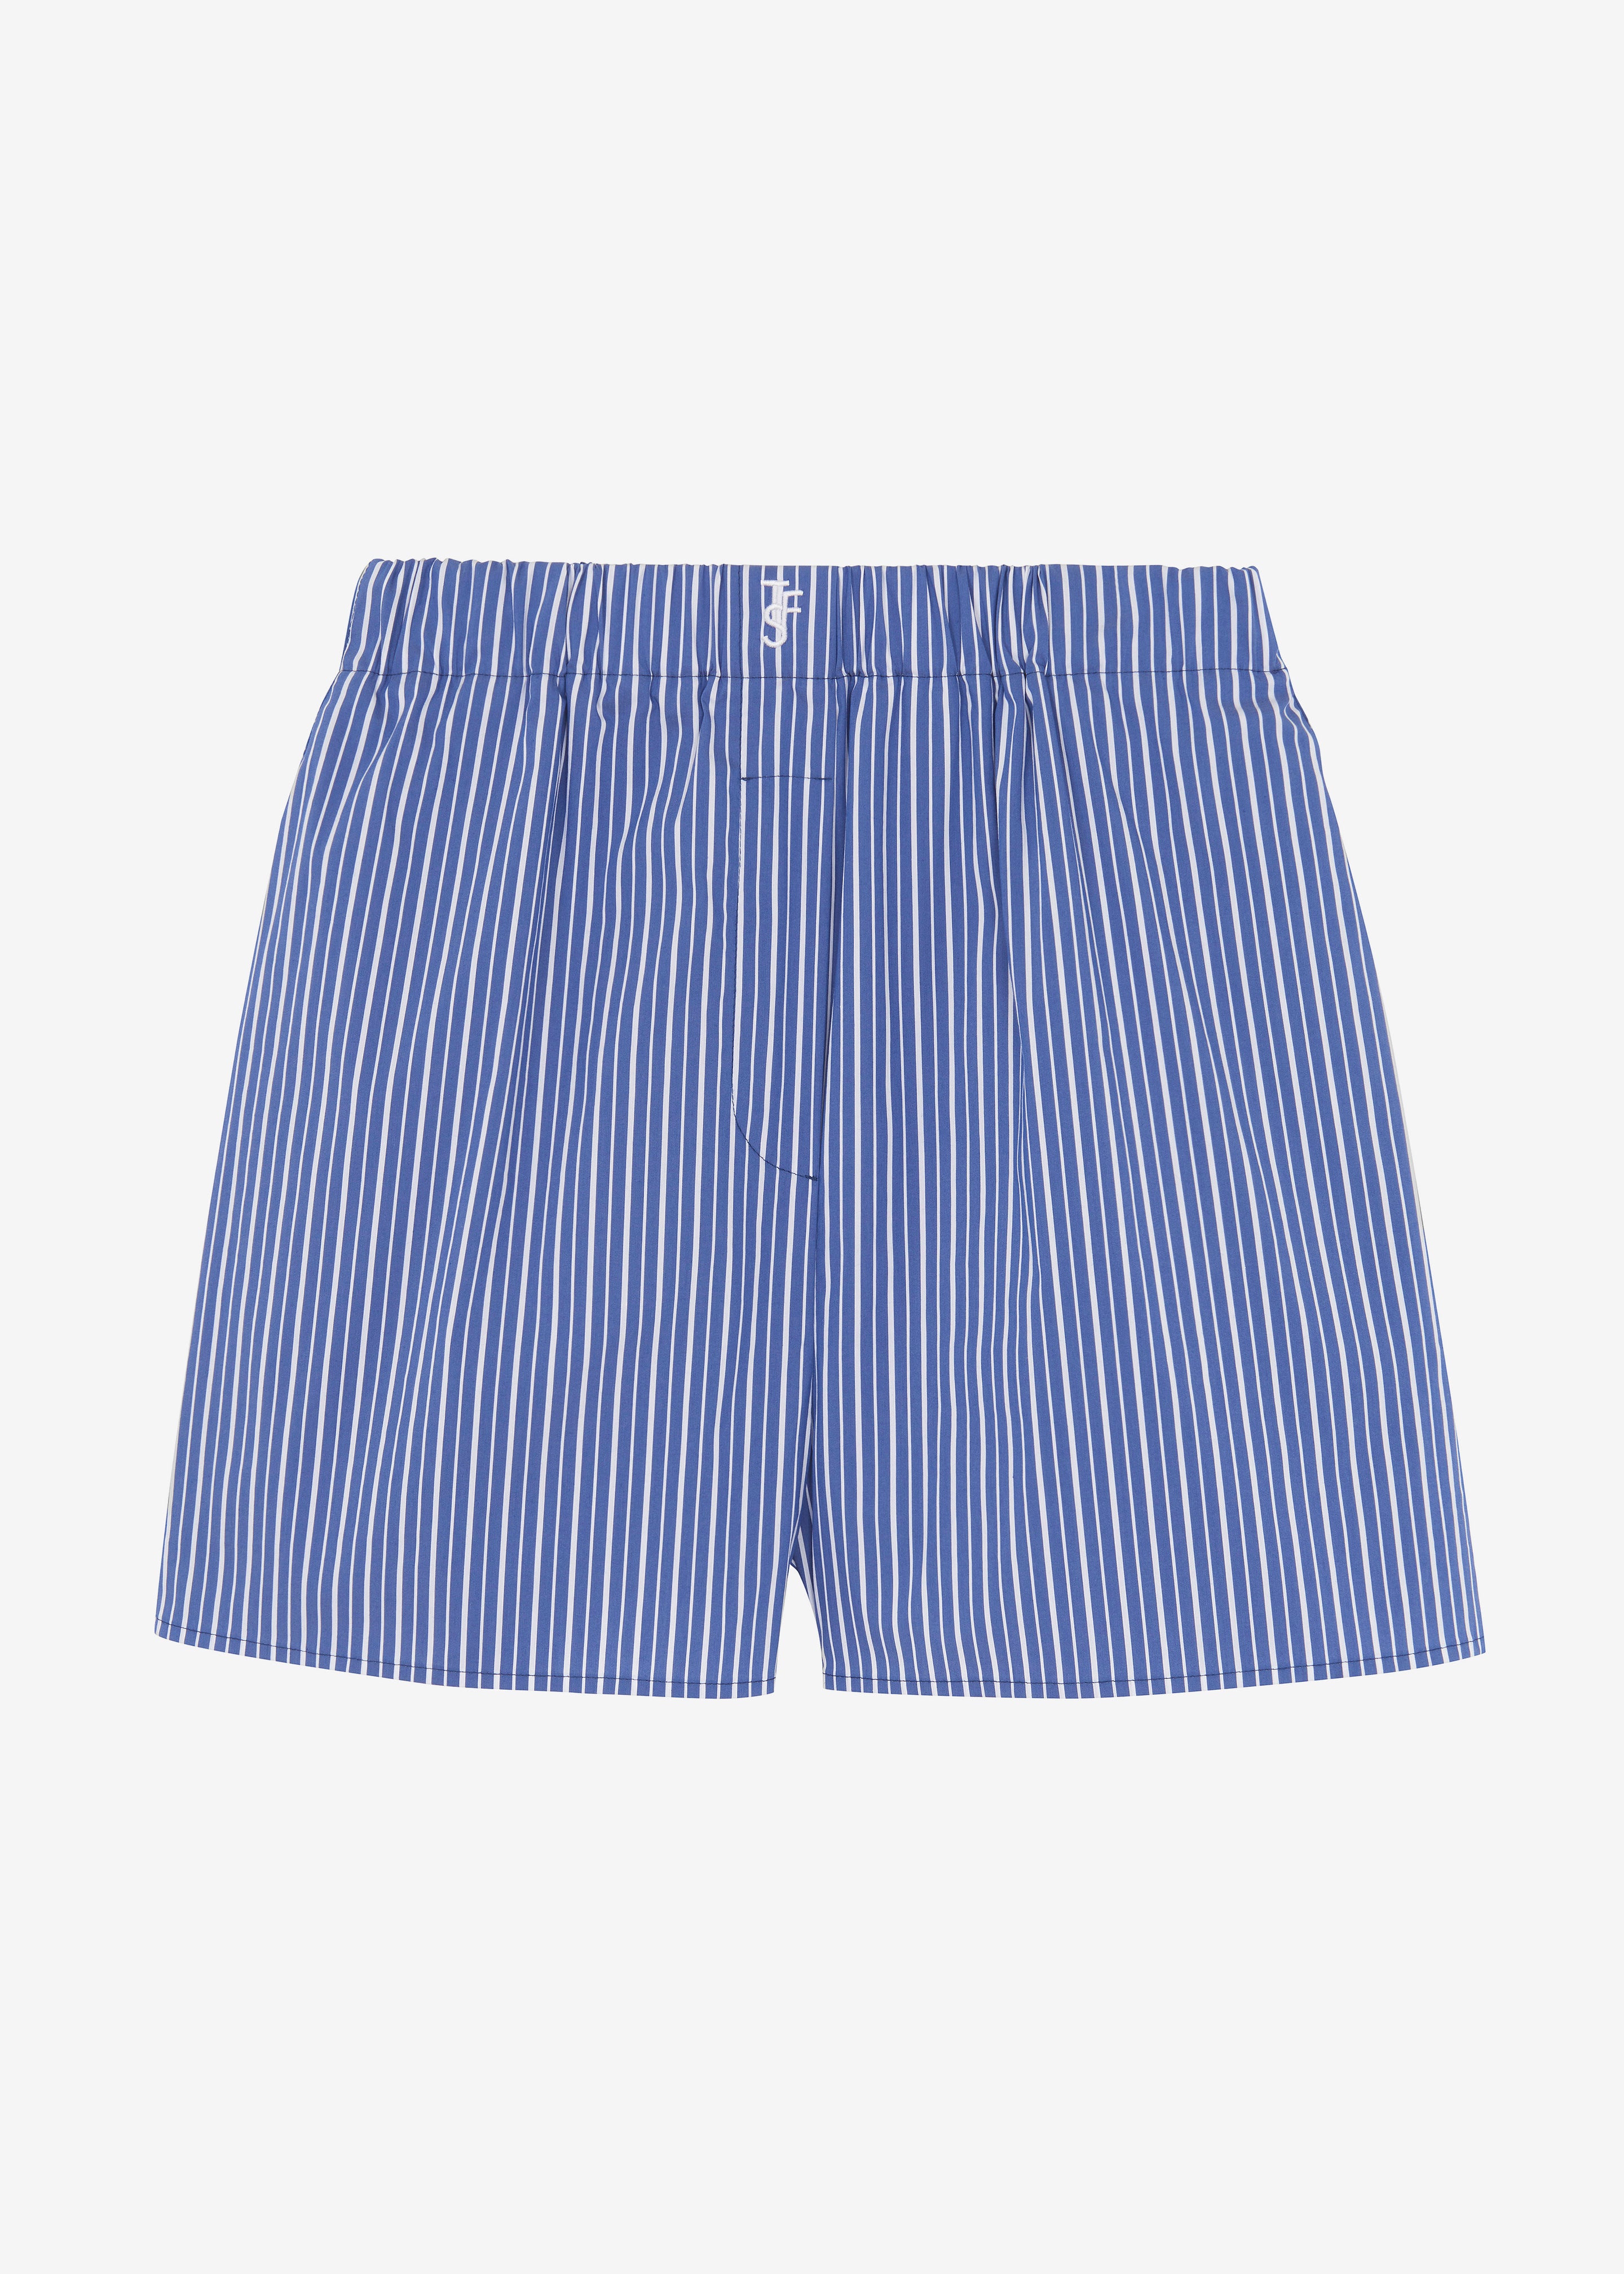 Mirca Boxer Shorts - Blue Multi Stripe - 9